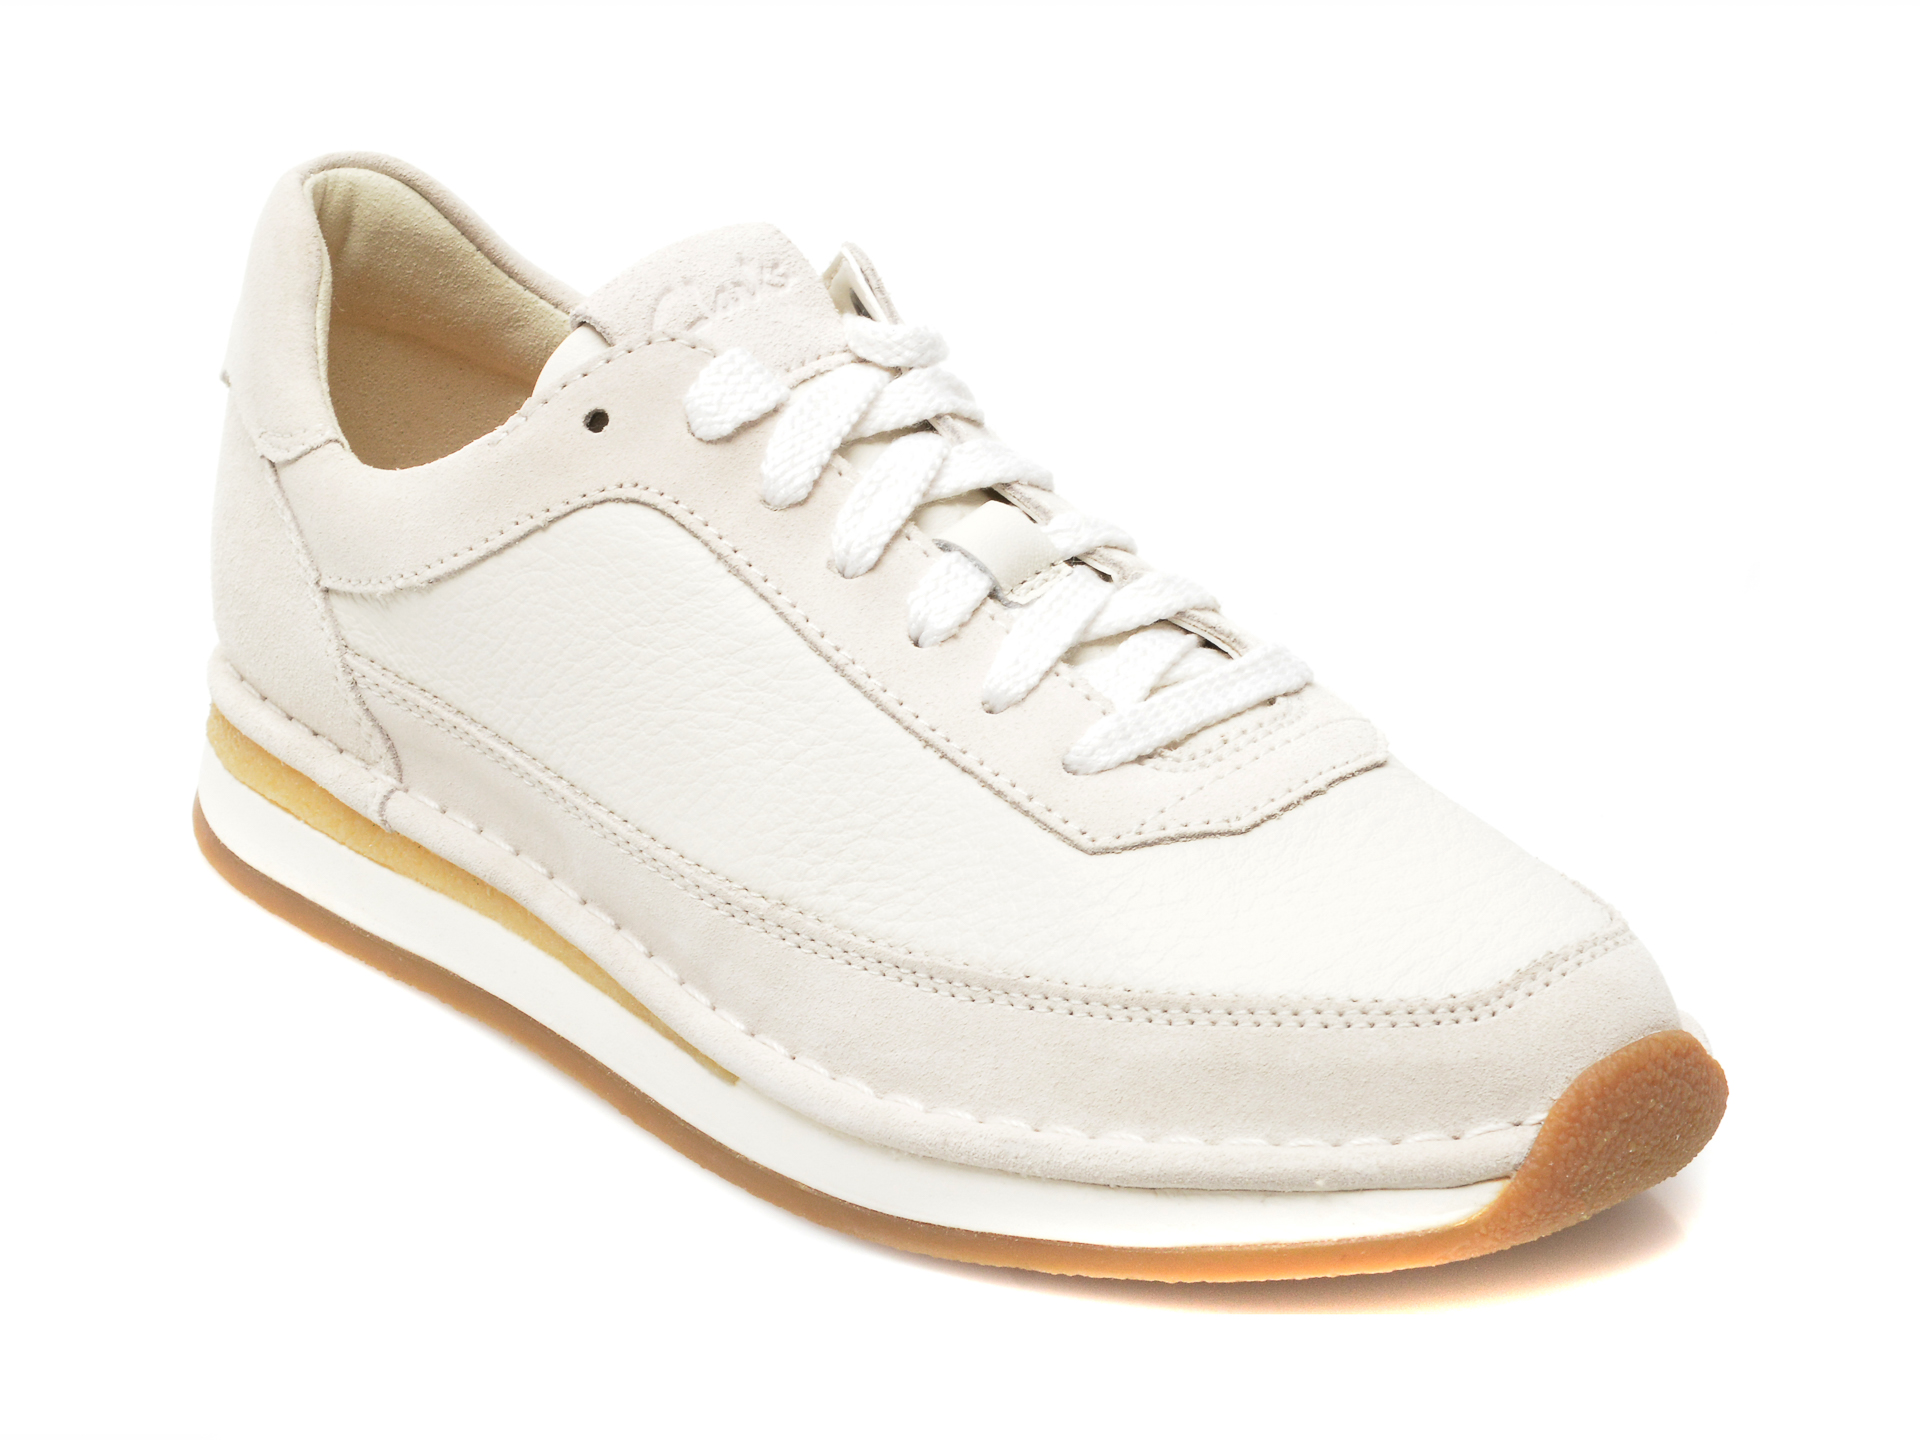 Pantofi CLARKS albi, CRAFT RUN LACE, din piele intoarsa imagine reduceri black friday 2021 /femei/pantofi